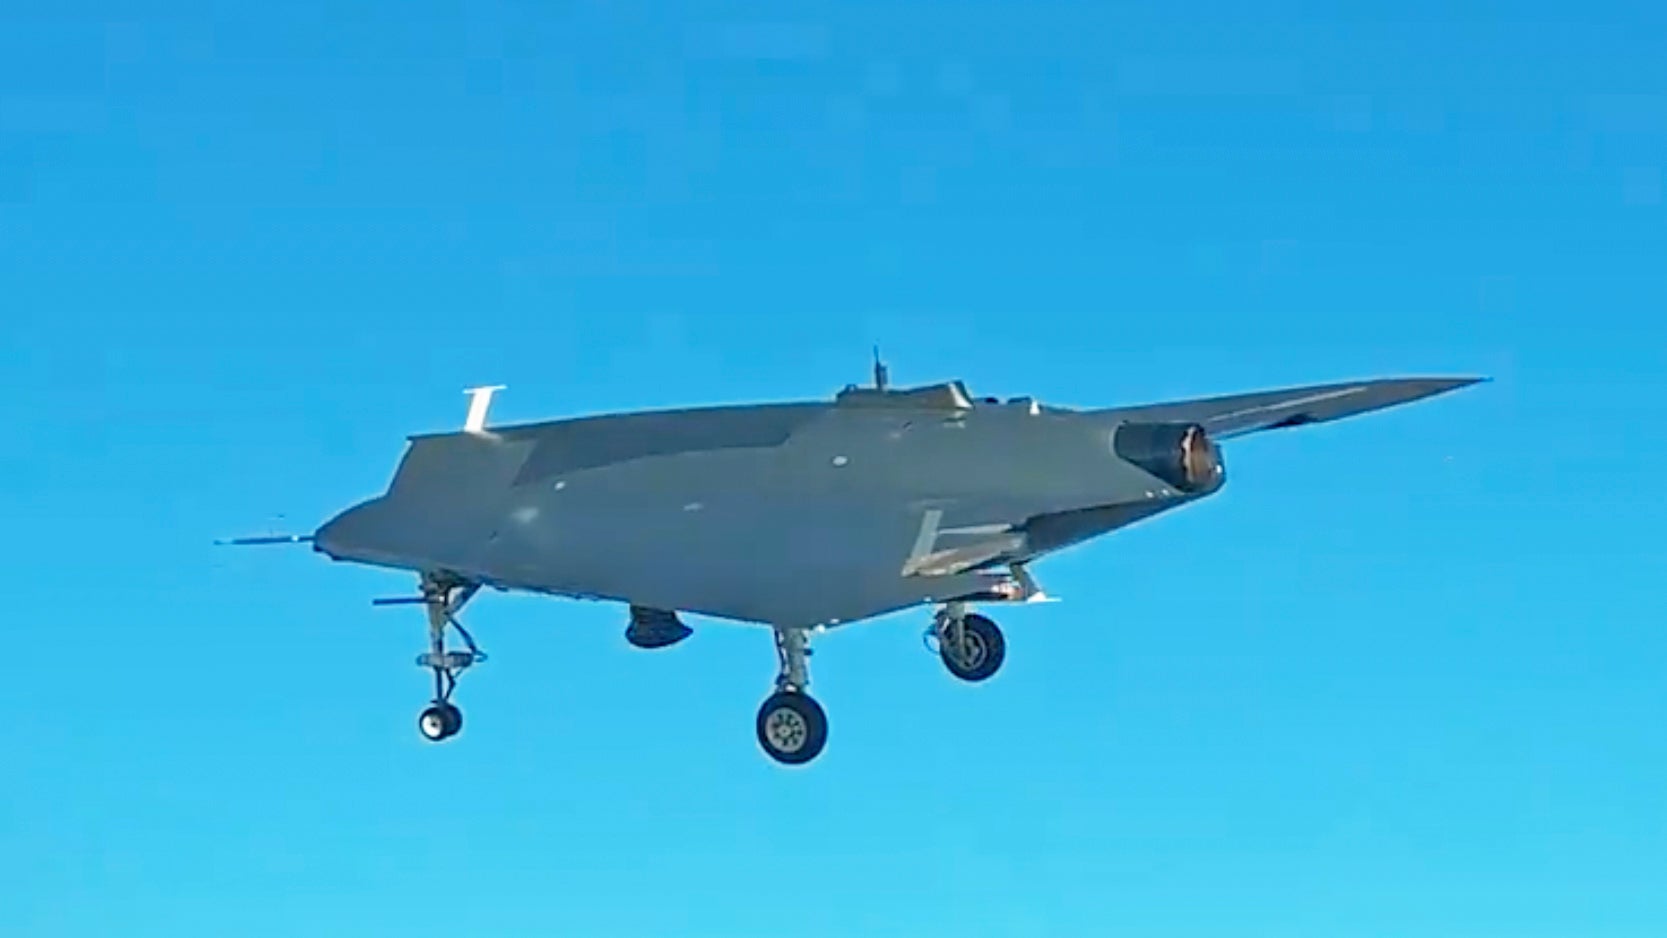 Turkeyâs ANKA-3 is a stealthy unmanned combat air vehicle that aims to fit within a growing locally-developed advanced air combat ecosystem.